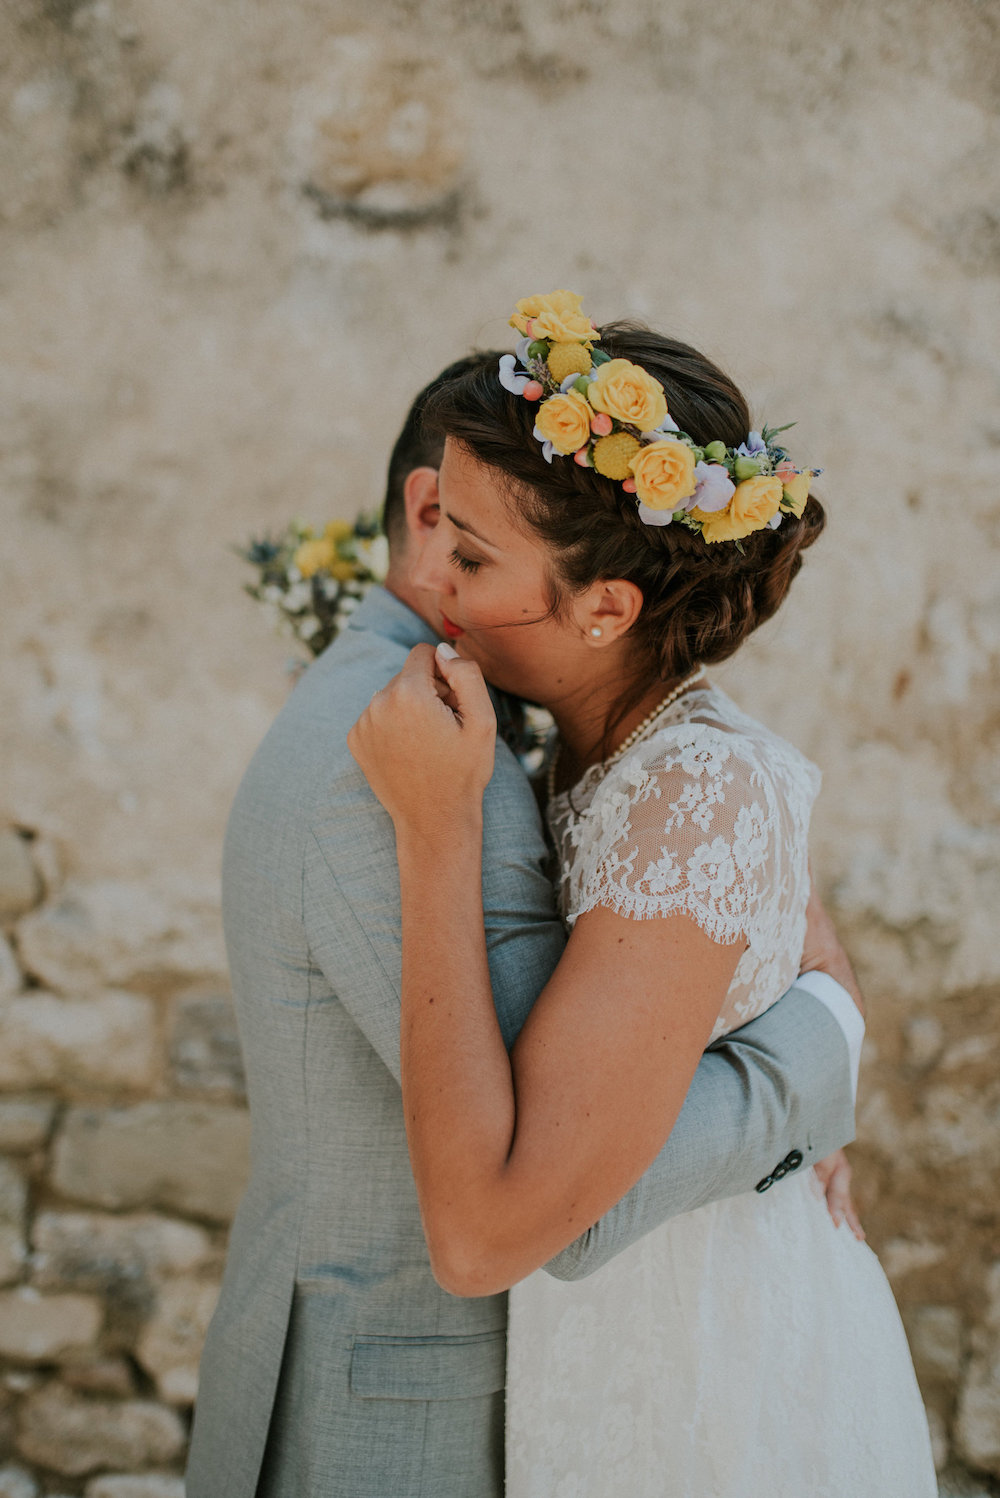 Mariage en drôme provençale - Mélanie et Vincent - Blog Mariage Madame C